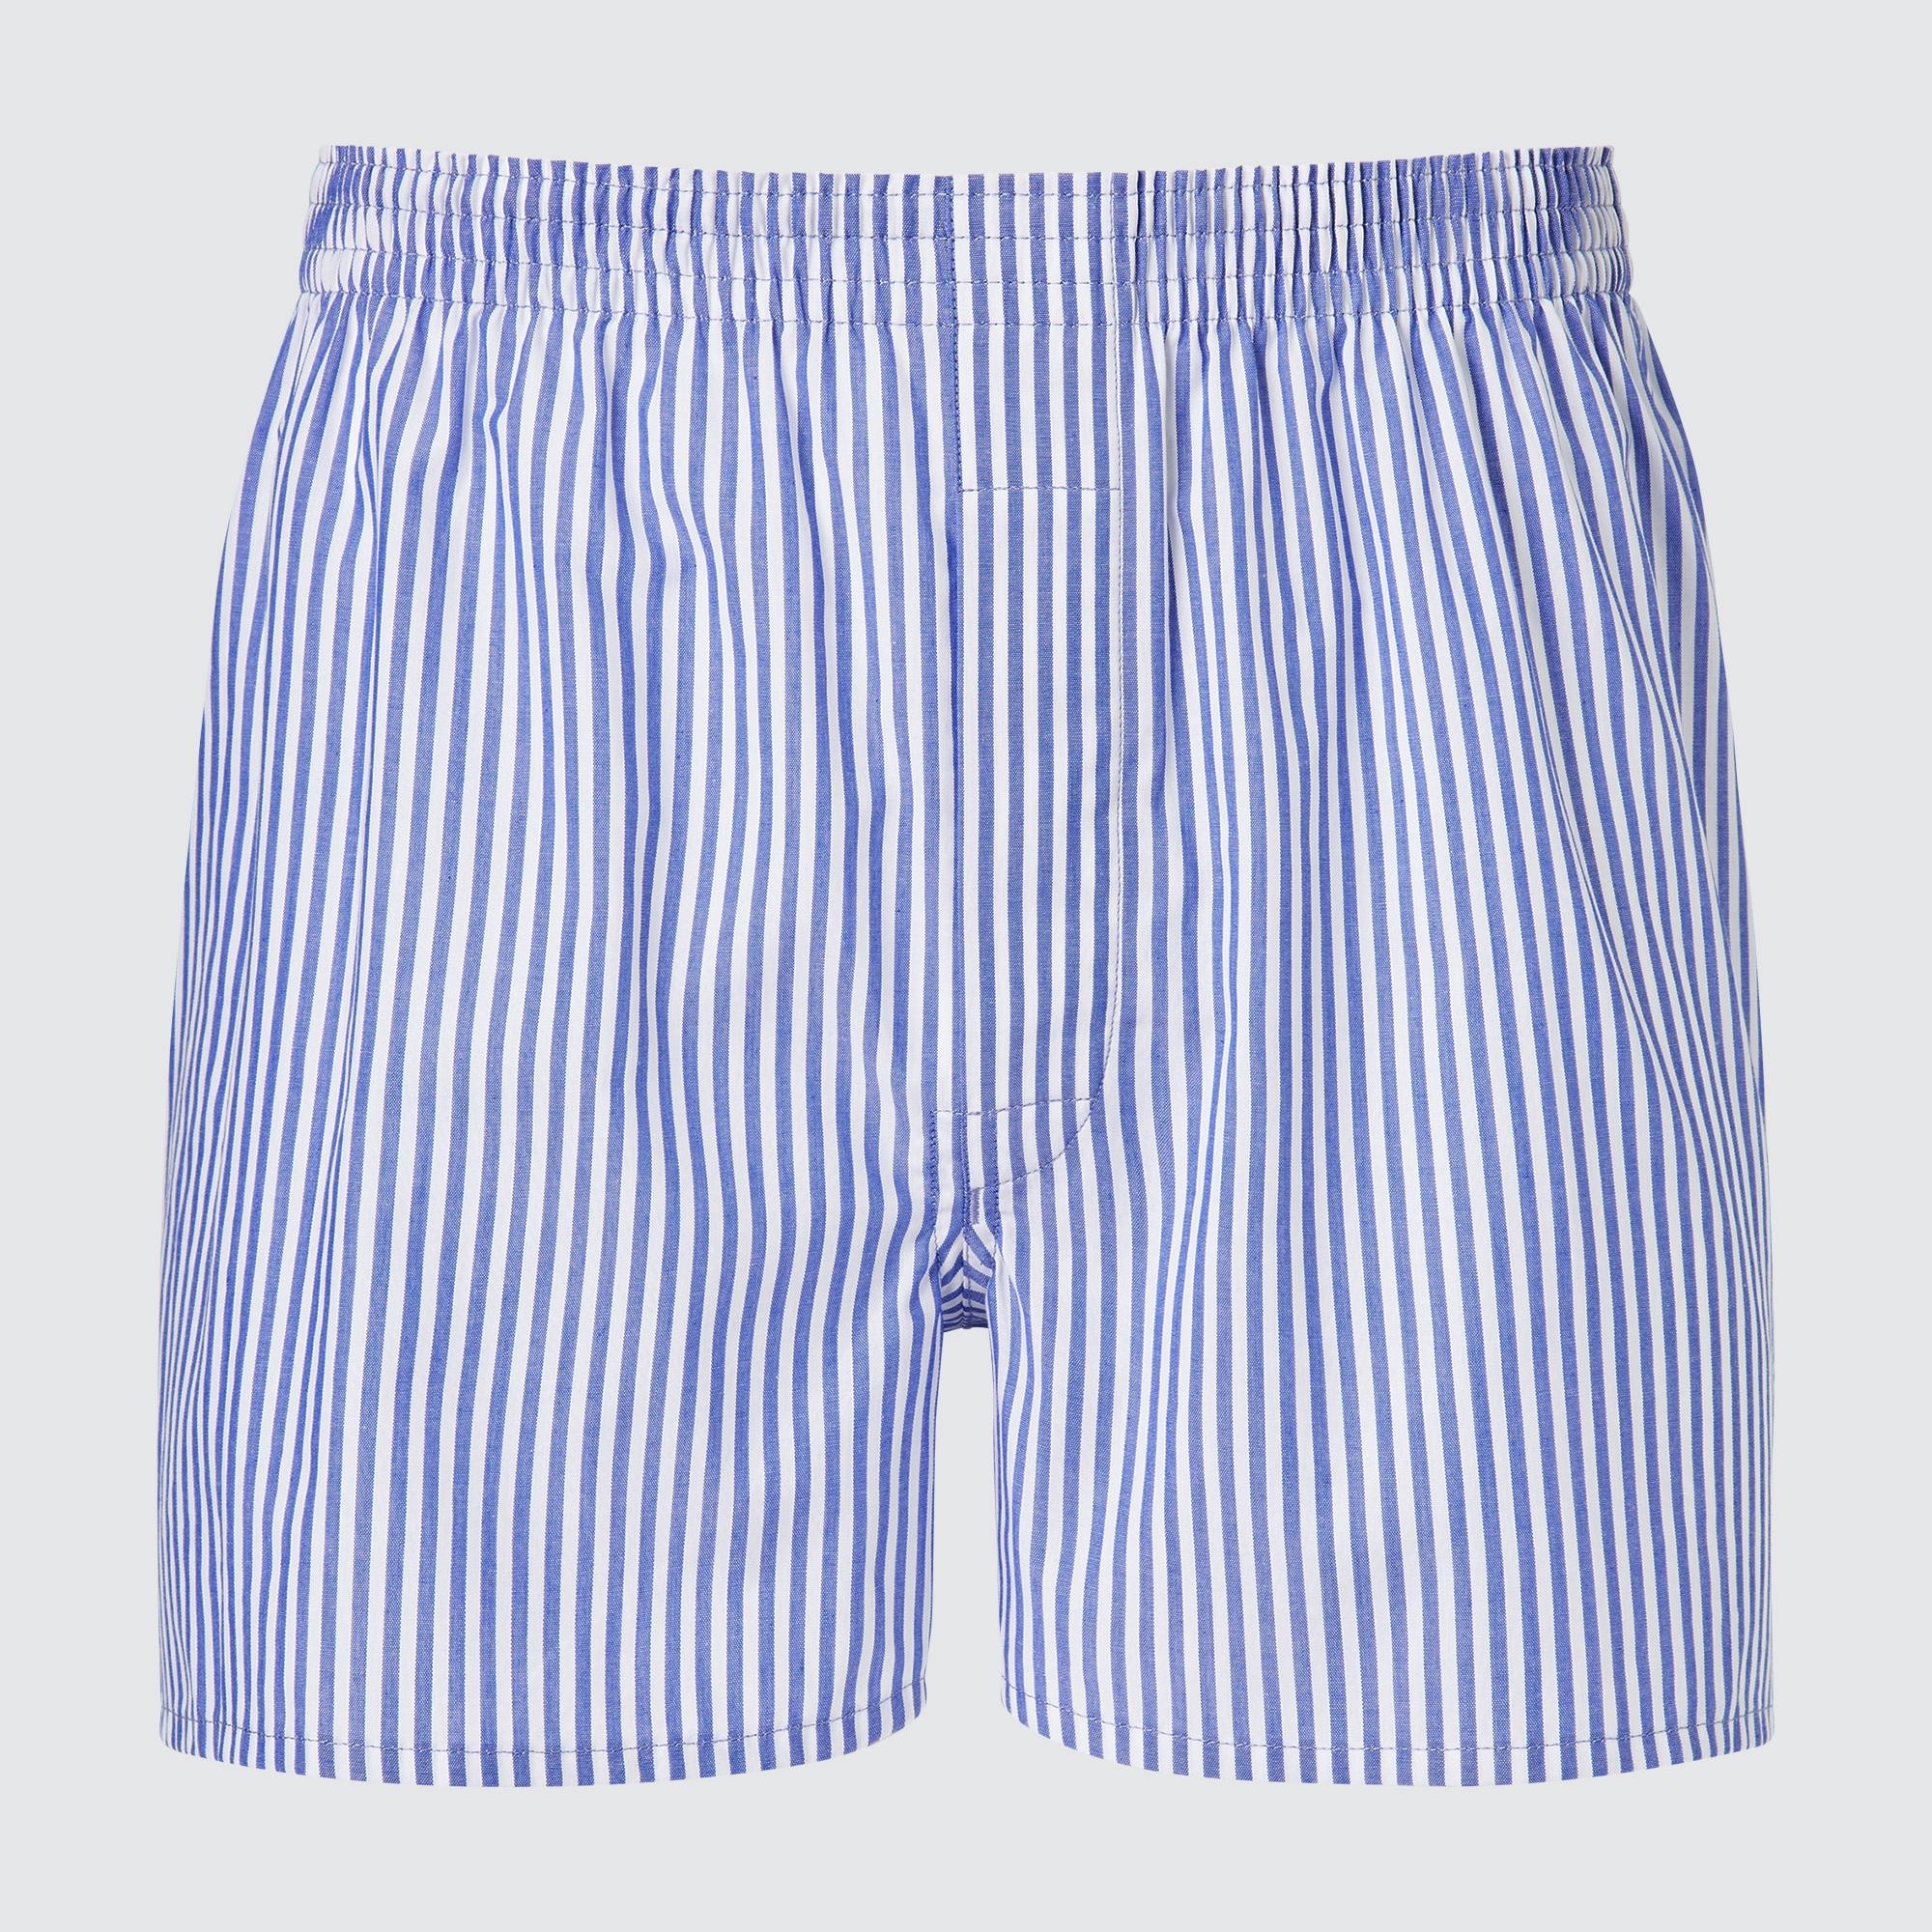 Woven London Striped Boxer Shorts